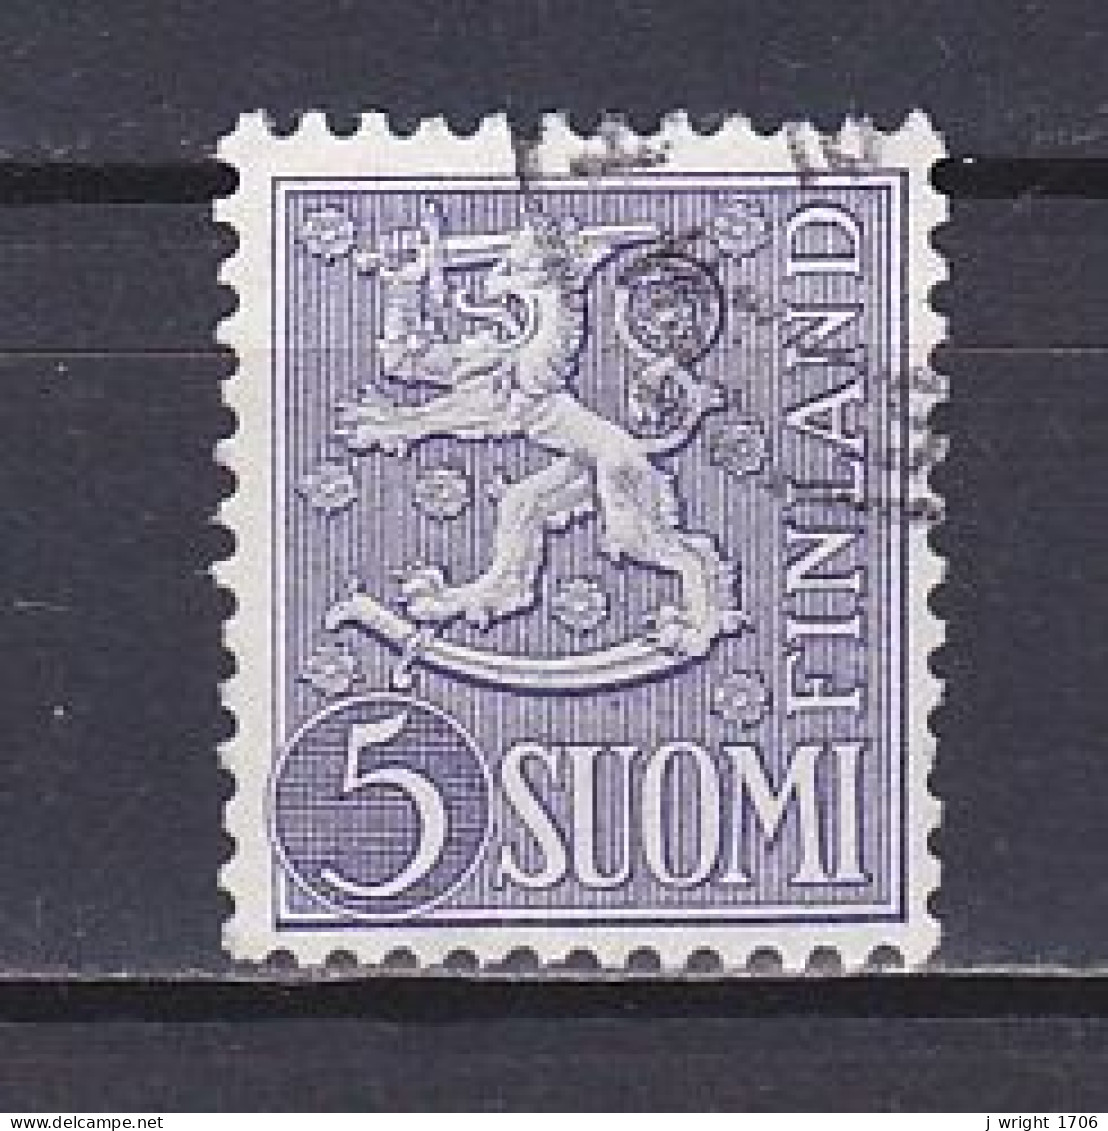 Finland, 1954, Lion, 5mk, USED - Gebruikt